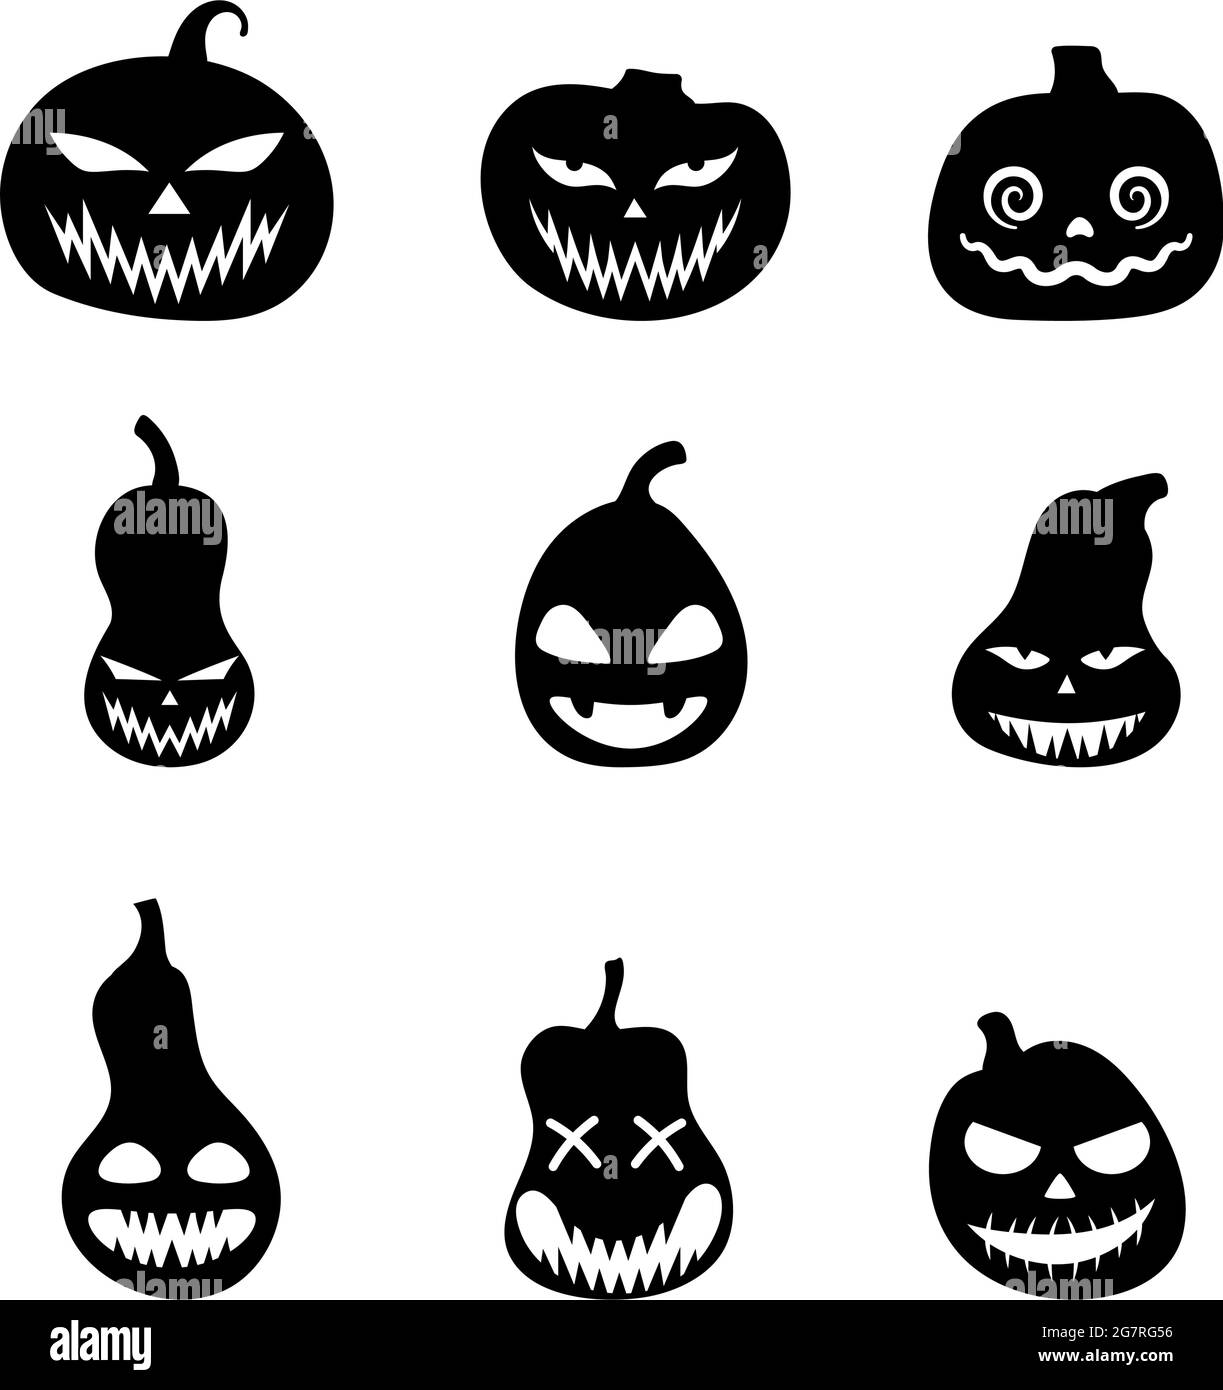 Ensemble de silhouettes de citrouilles effrayantes pour Halloween. Illustration des expressions du visage de Jack-o-lanterne. Collection simple d'images effrayantes d'horreur de citrouilles. Est Illustration de Vecteur